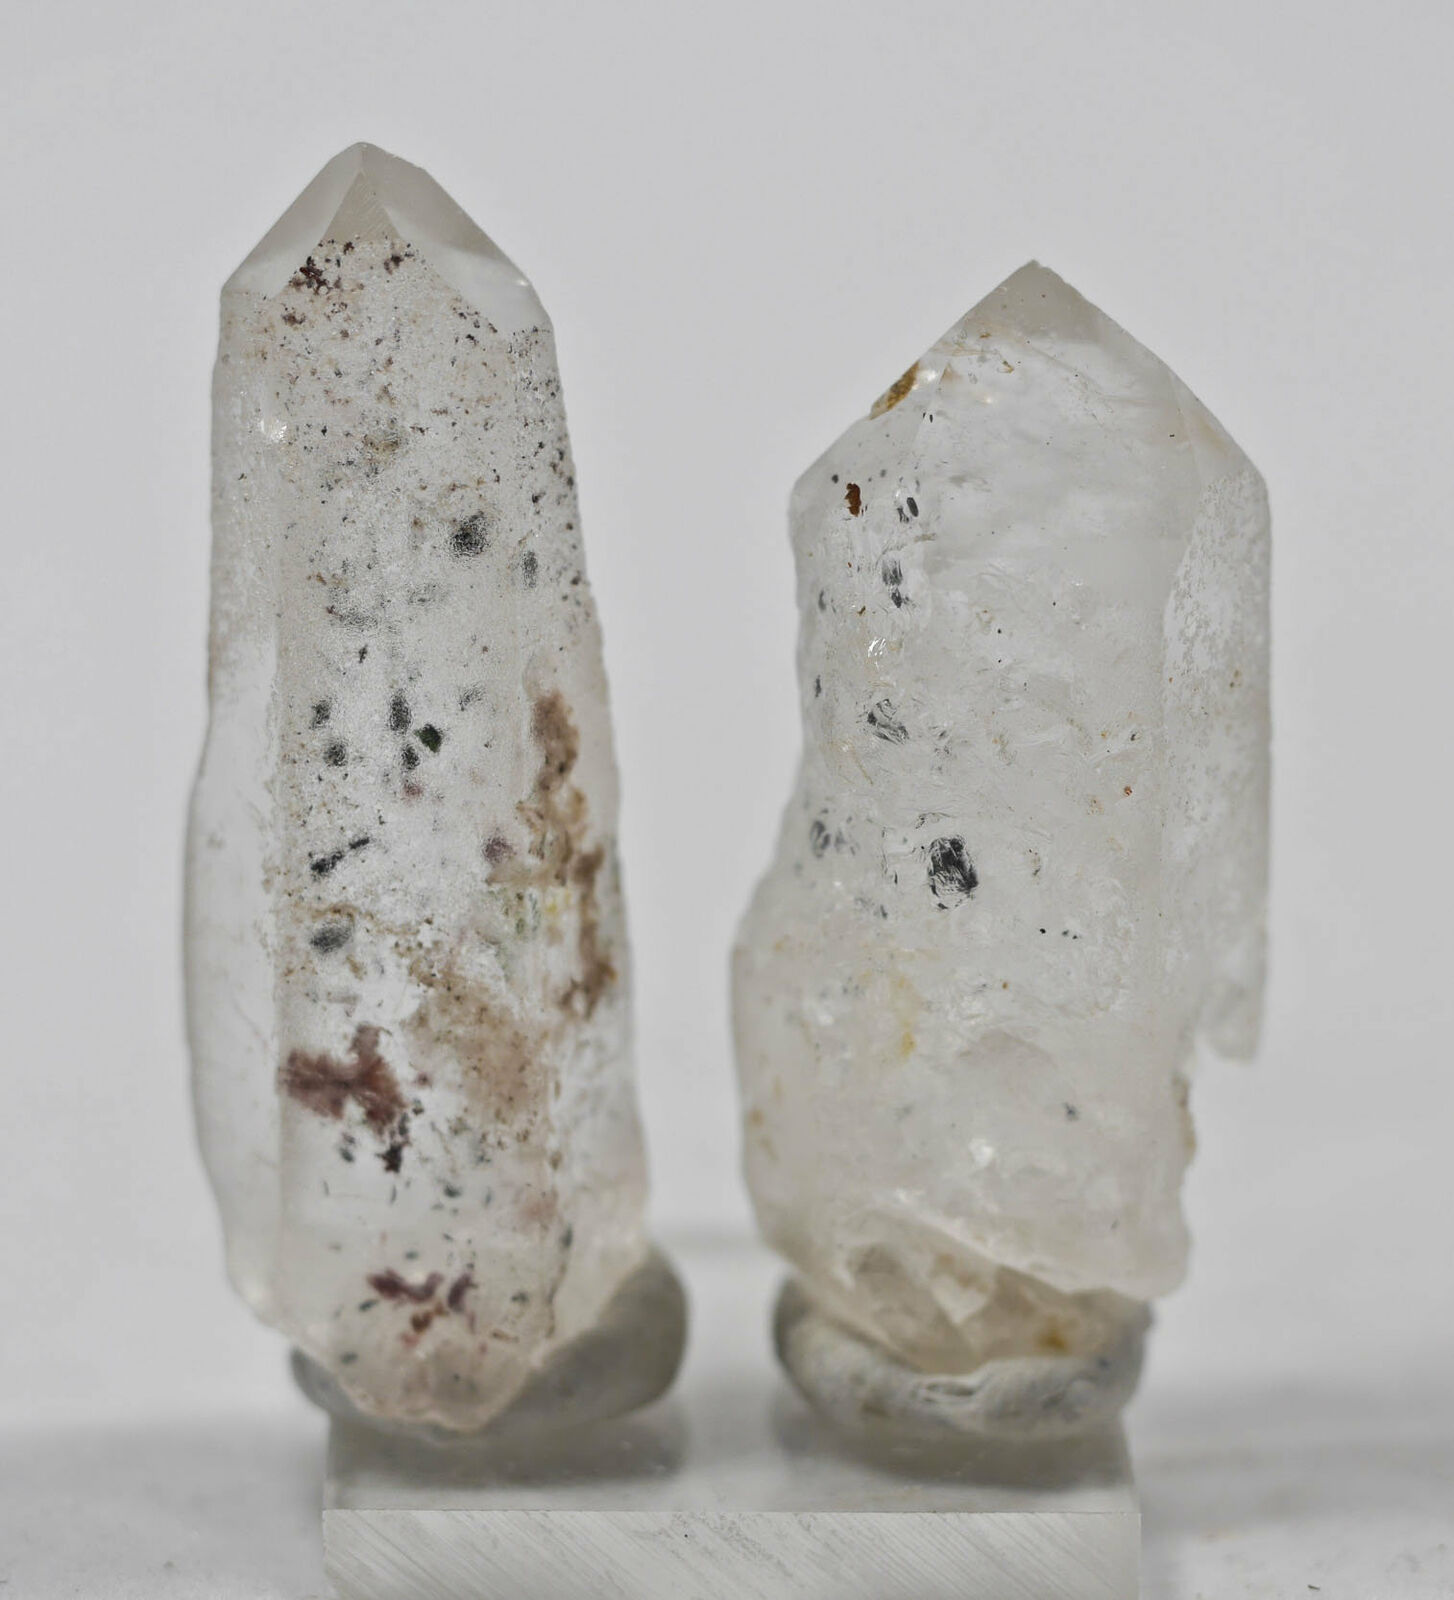 Quartz W Clinochlore Seraphinite, Raw Crystals - Gift, Home Decor, Stones, 17221